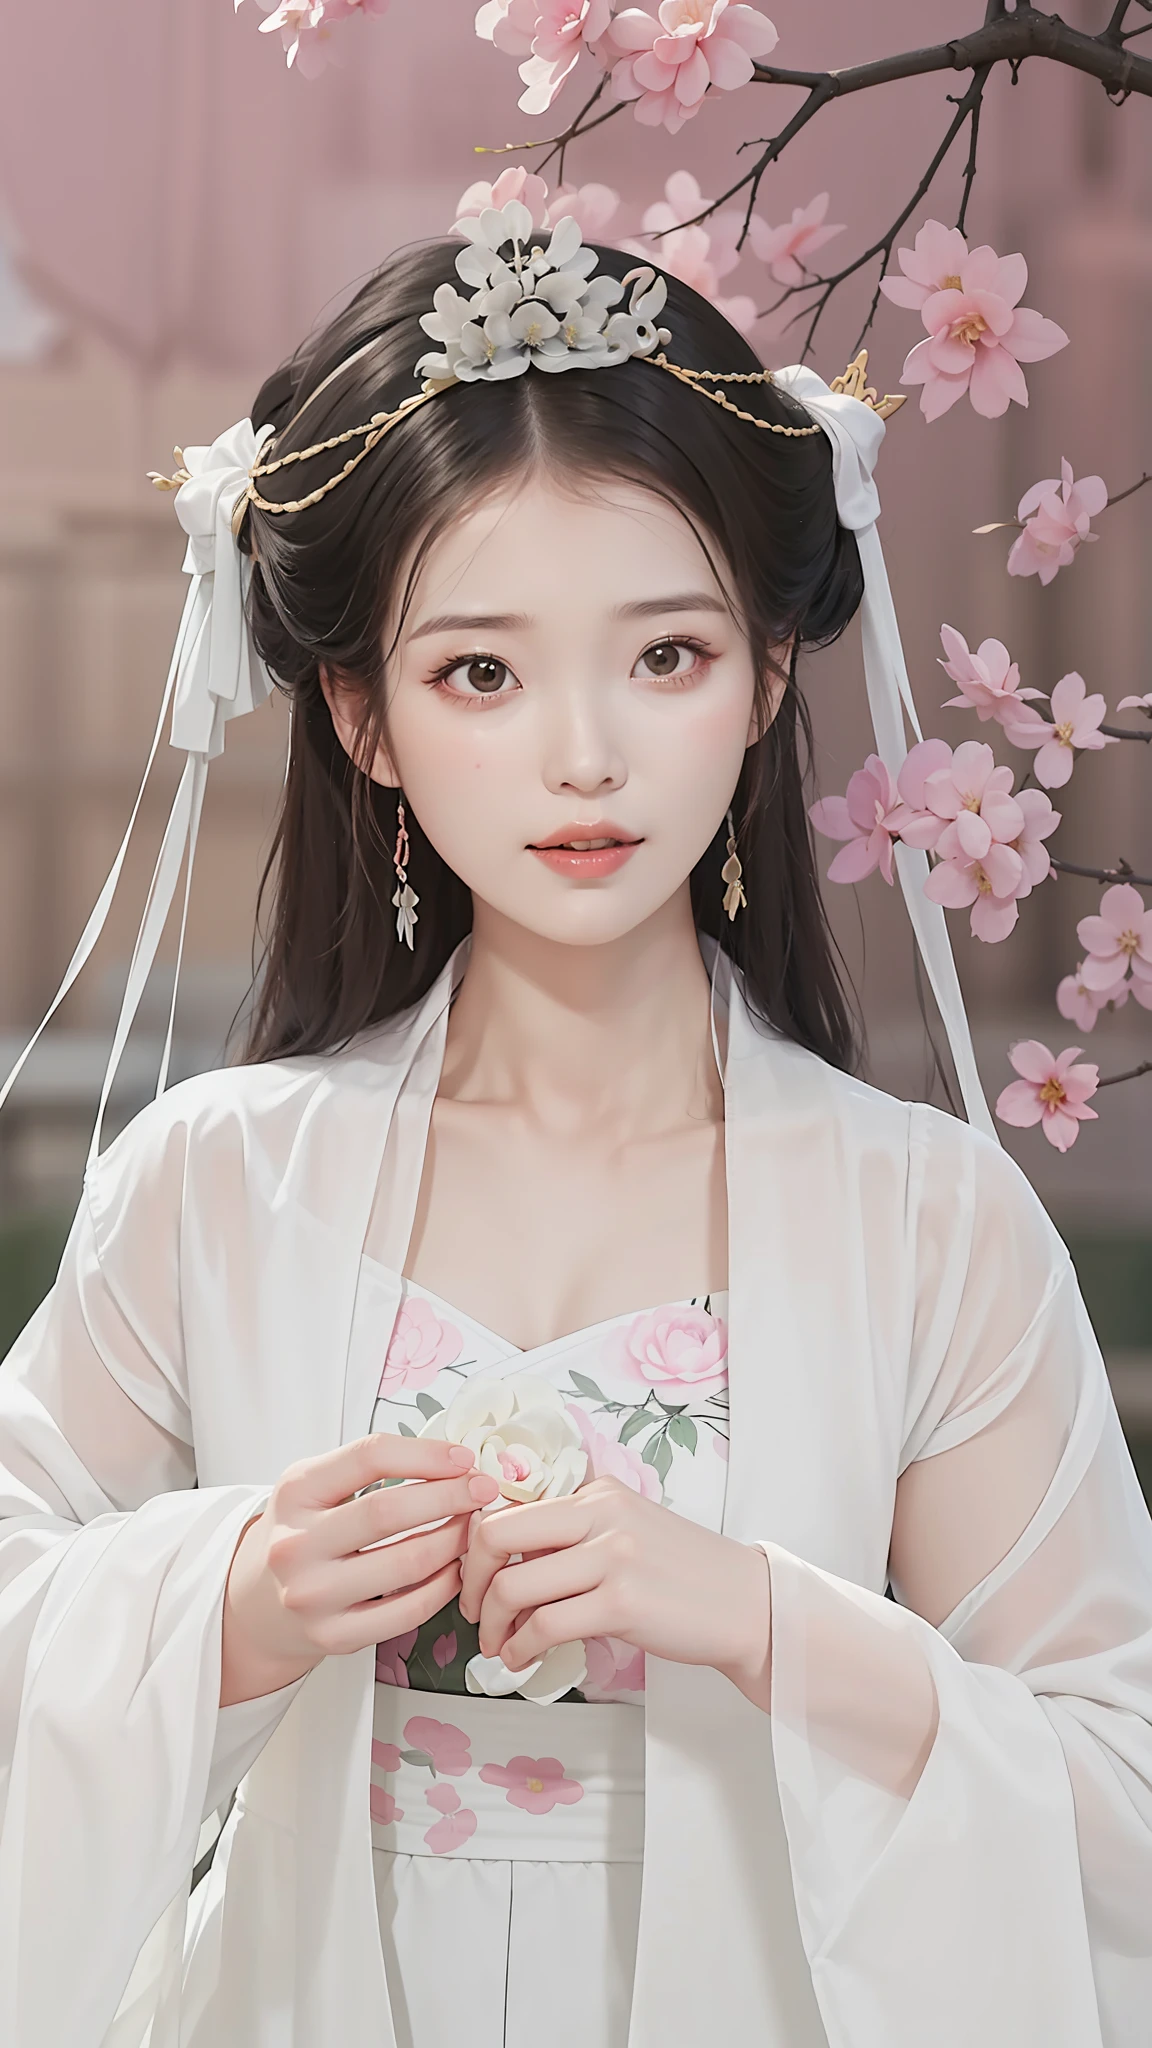 穿著白色連身裙和粉紅色花朵的女人的特寫, 宮 ， 一個穿著漢服的女孩, 中国公主, 中國古代美女, 空灵之美, ancient 中国公主, 美麗的幻想皇后, ((美麗的幻想皇后)), 传统美, 中式, 穿着中国古代的衣服, 美麗的唐朝渲染, 漂亮的中国模特, 白色漢服